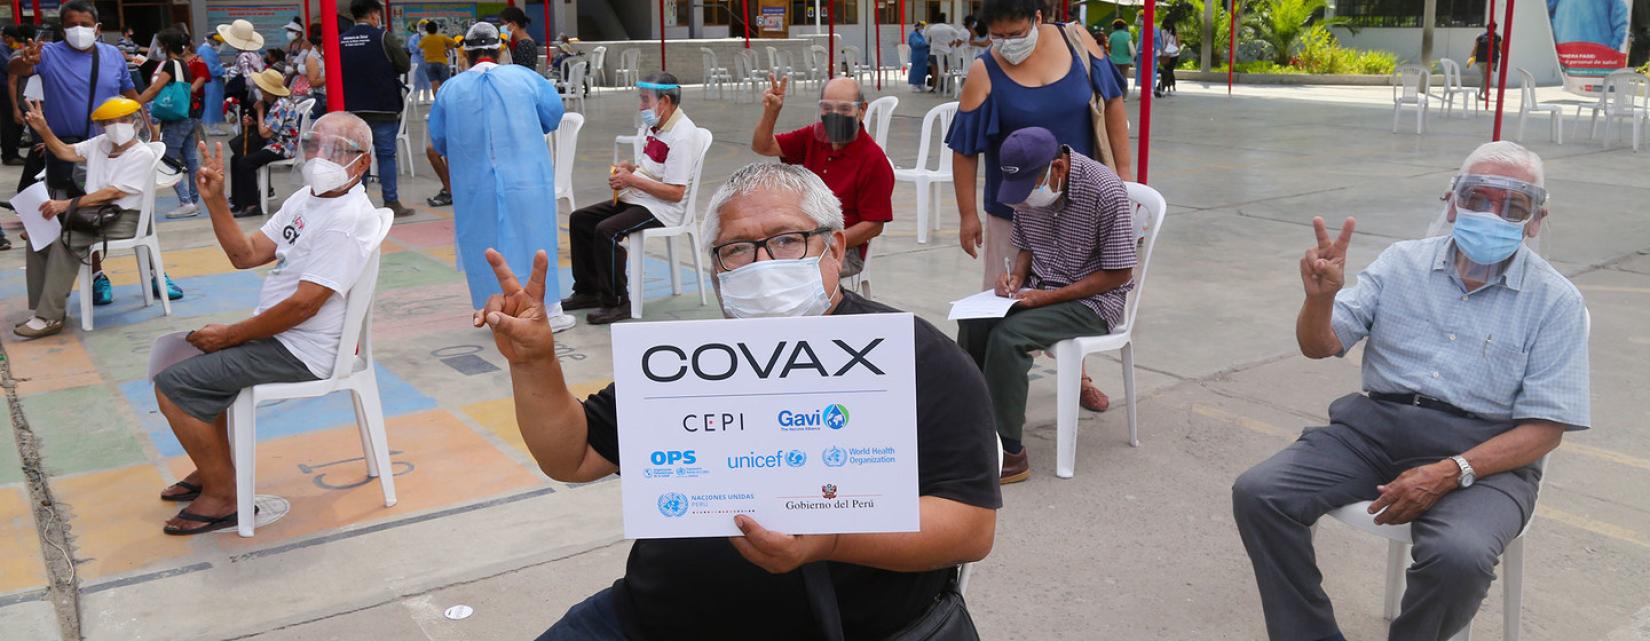 Os idosos estão entre os primeiros peruanos a receber vacinas contra a COVID-19 em um posto de vacinação em Lima, Peru.